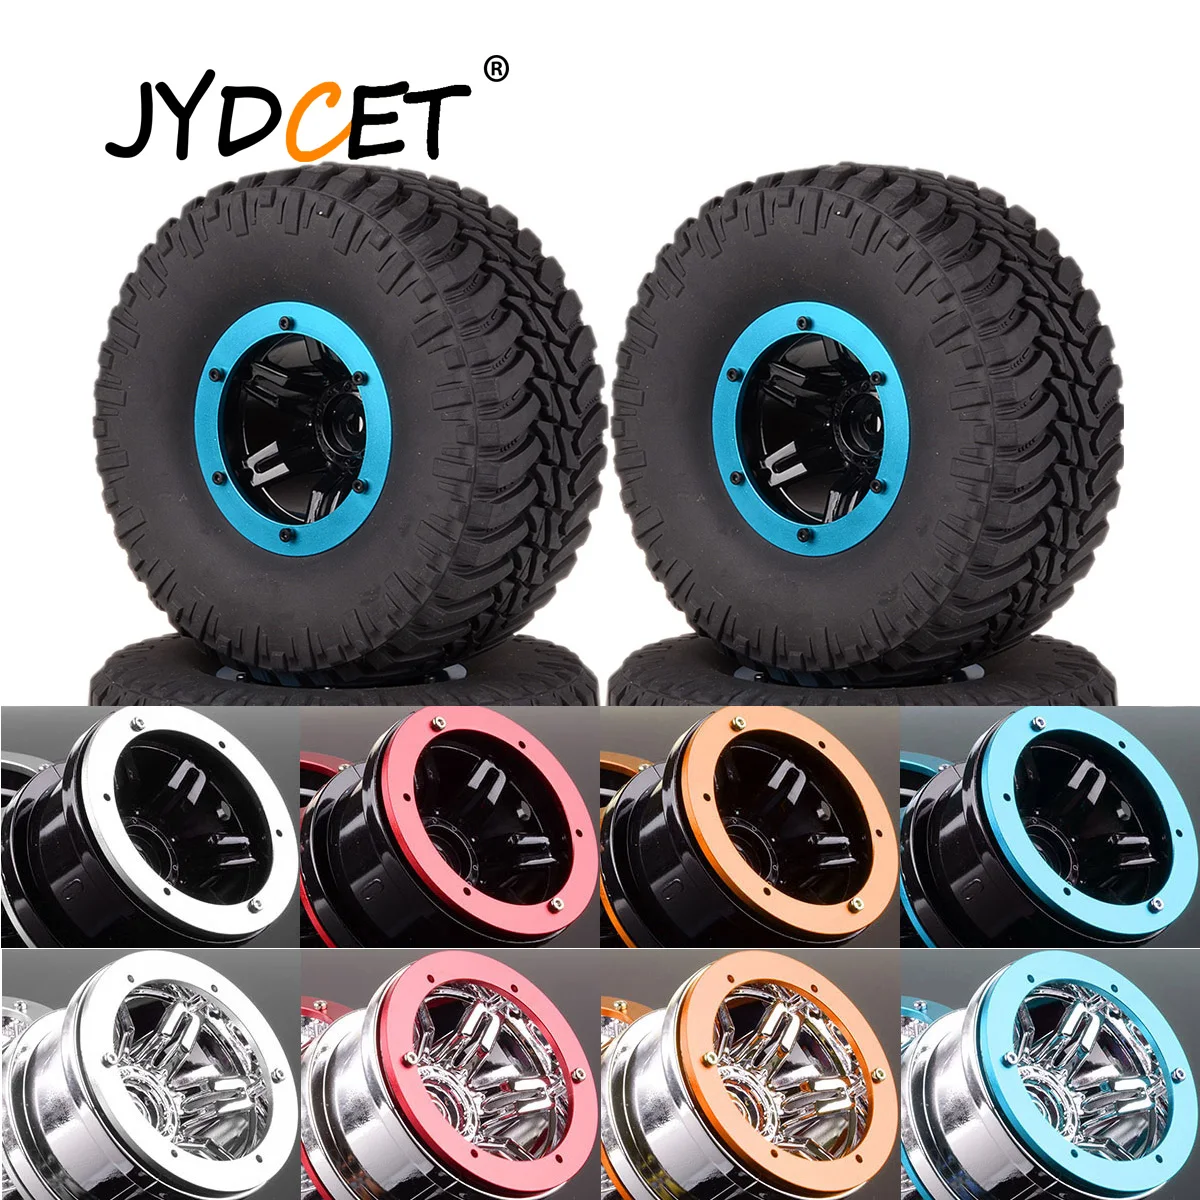 

JYDCET 4Pcs 2.2" Wheel Rims Hub & Super Swamper Rocks 130mm Tyre Tires 6007-3033 For RC 1/10 Rock Crawler RR10 D90 CC01 90025